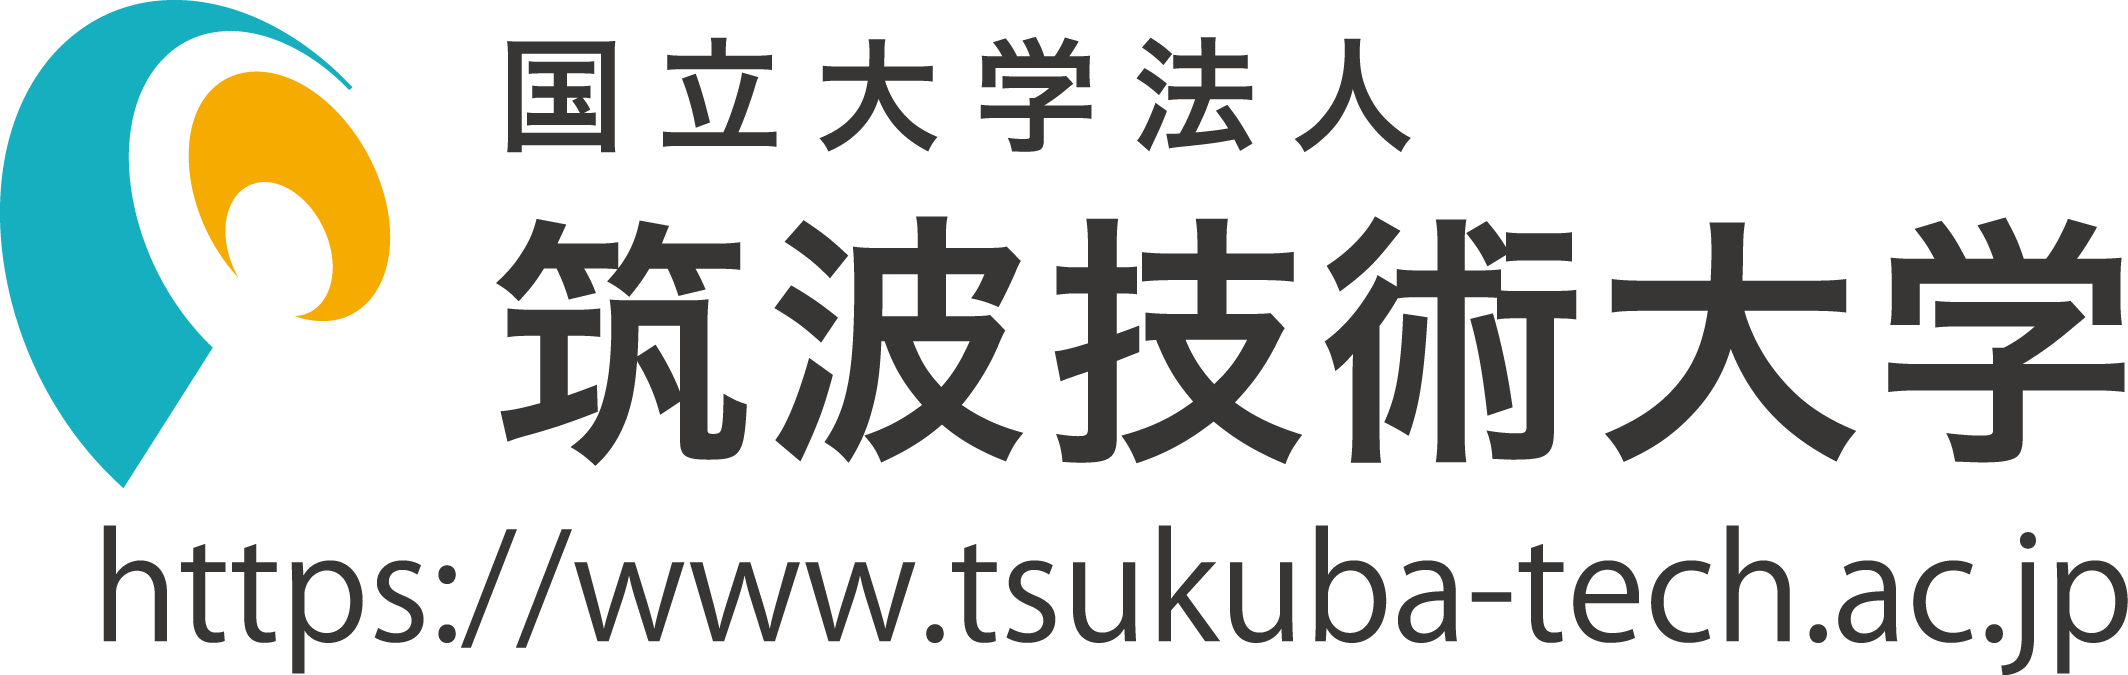 Logo Tsukuba University